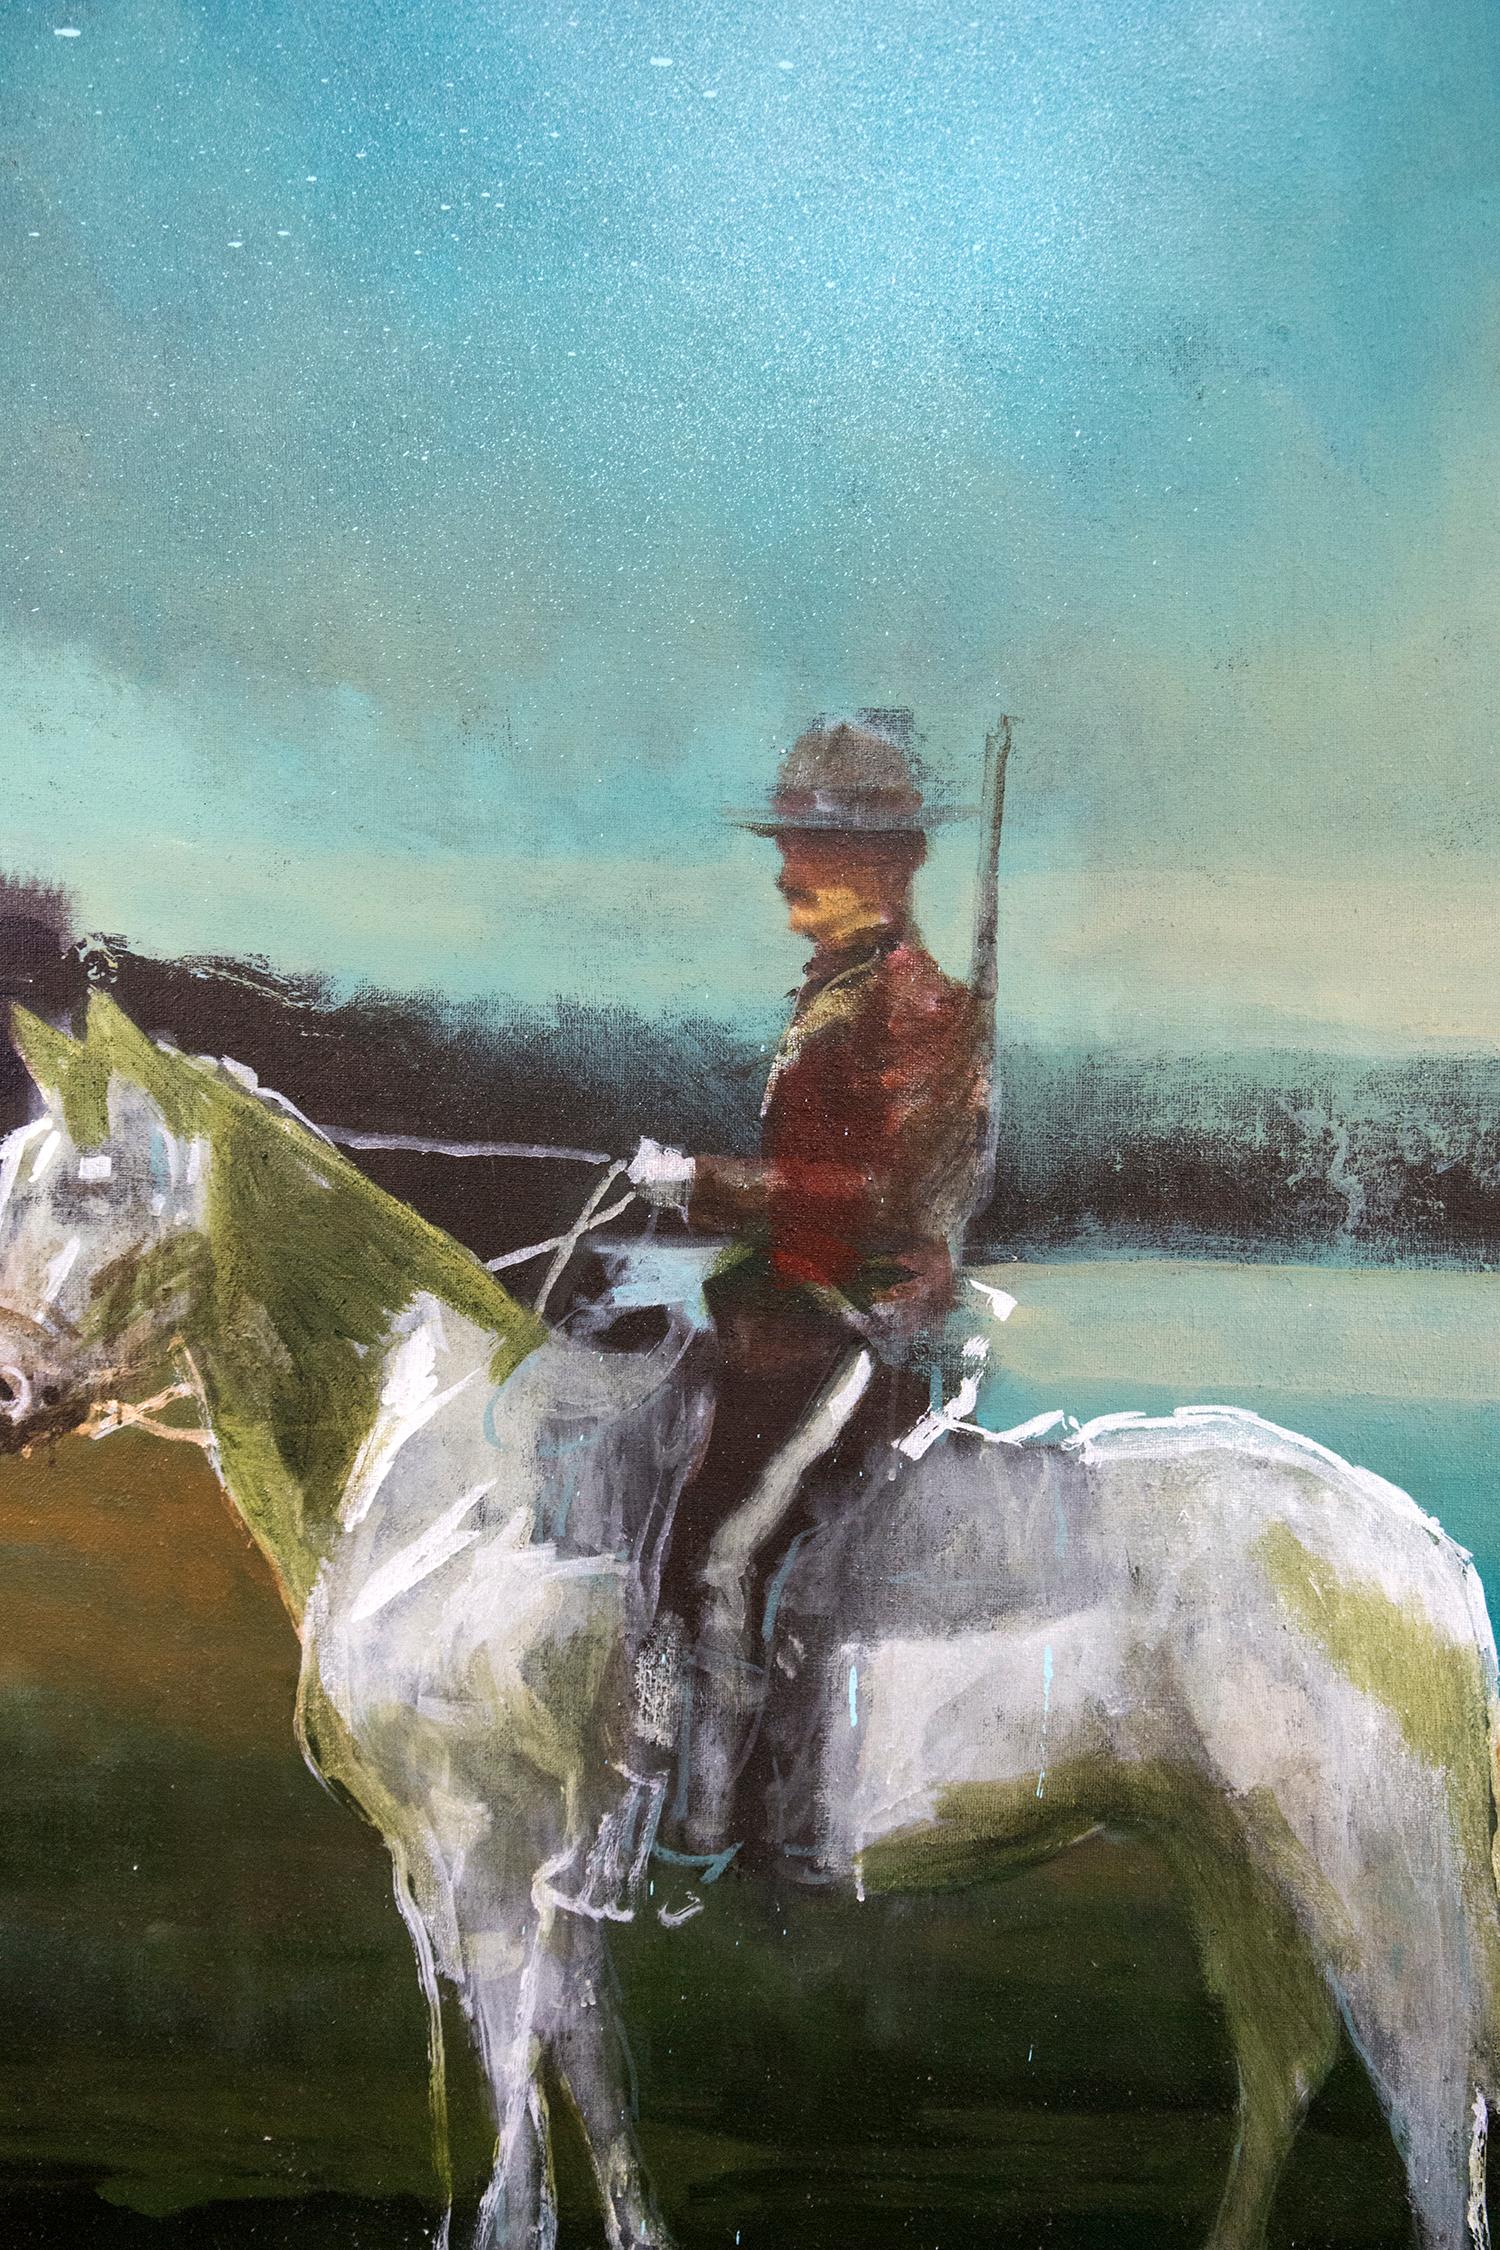 Die ikonische Präsenz eines Mounties in rotem Serge auf einem weißen Pferd wird von einem azurblauen See und einem stimmungsvollen Himmel untermalt. Die Gemälde von Peter Hoffer wecken die Sehnsucht nach klassischen, romantischen Formen und Epochen.